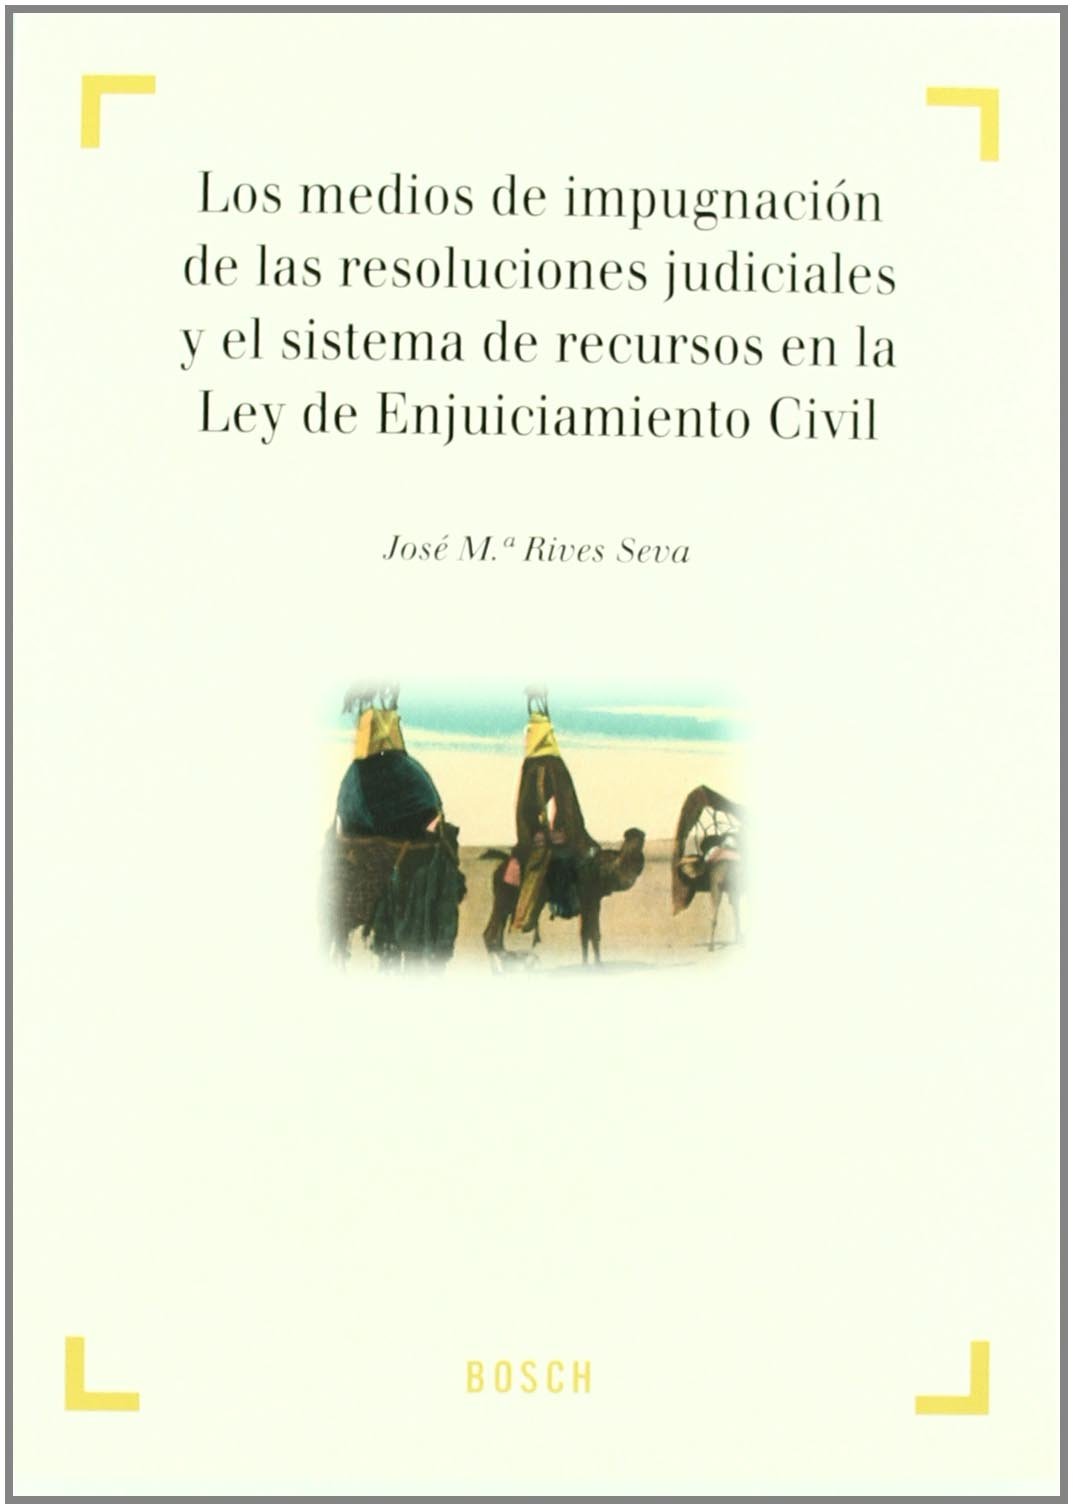 Los medios de impugnación de las resoluciones judiciales y el sistema de recursos en la Ley de Enjuiciamiento Civil